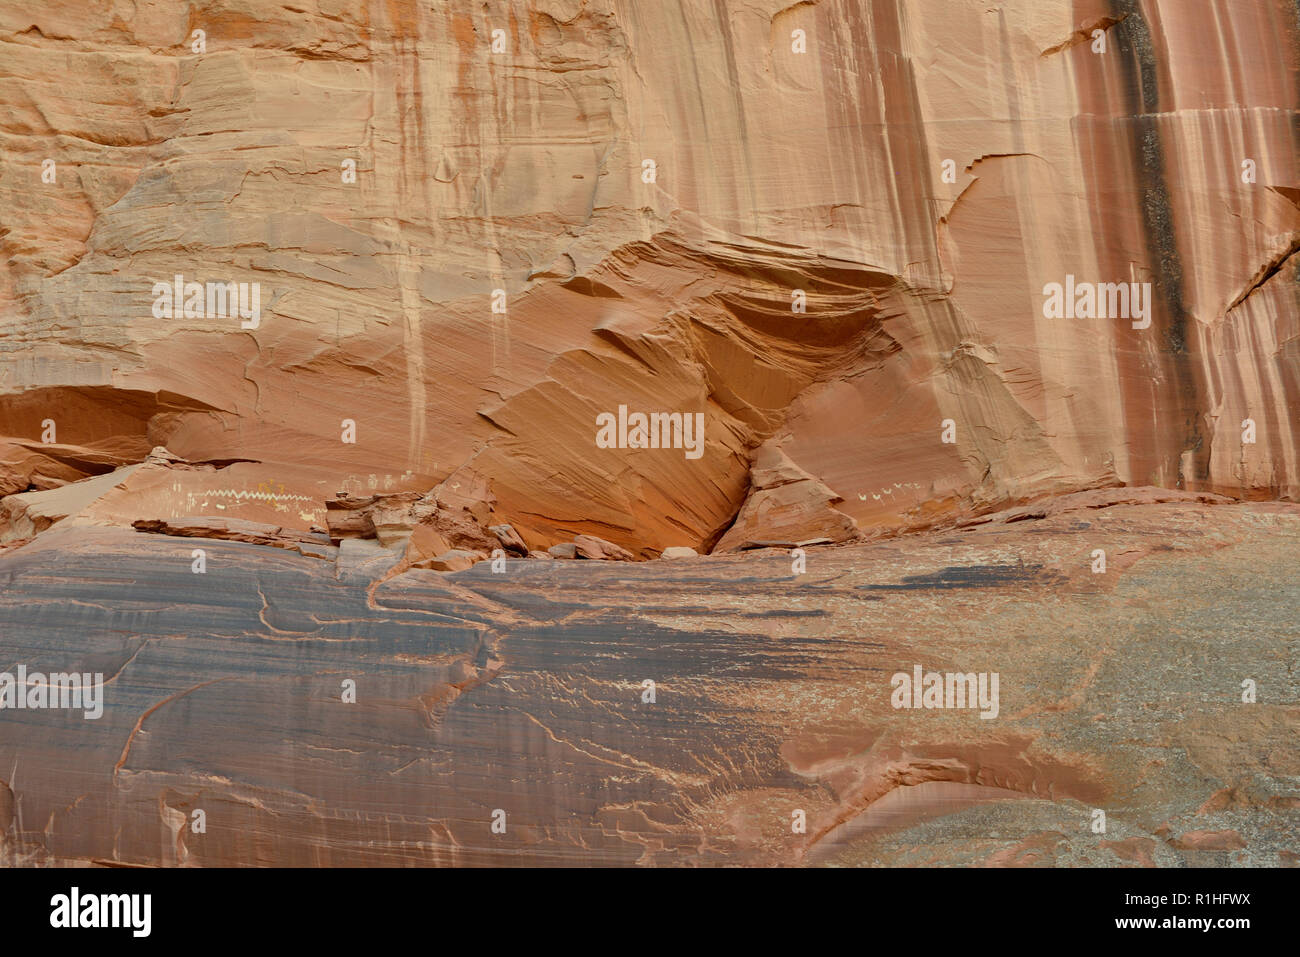 Pictogrammes : lignes ondulées, Stick figures, animaux, oiseaux, Canyon de Chelly National Monument, Chinle, Arizona, USA 180930 69916  Banque D'Images